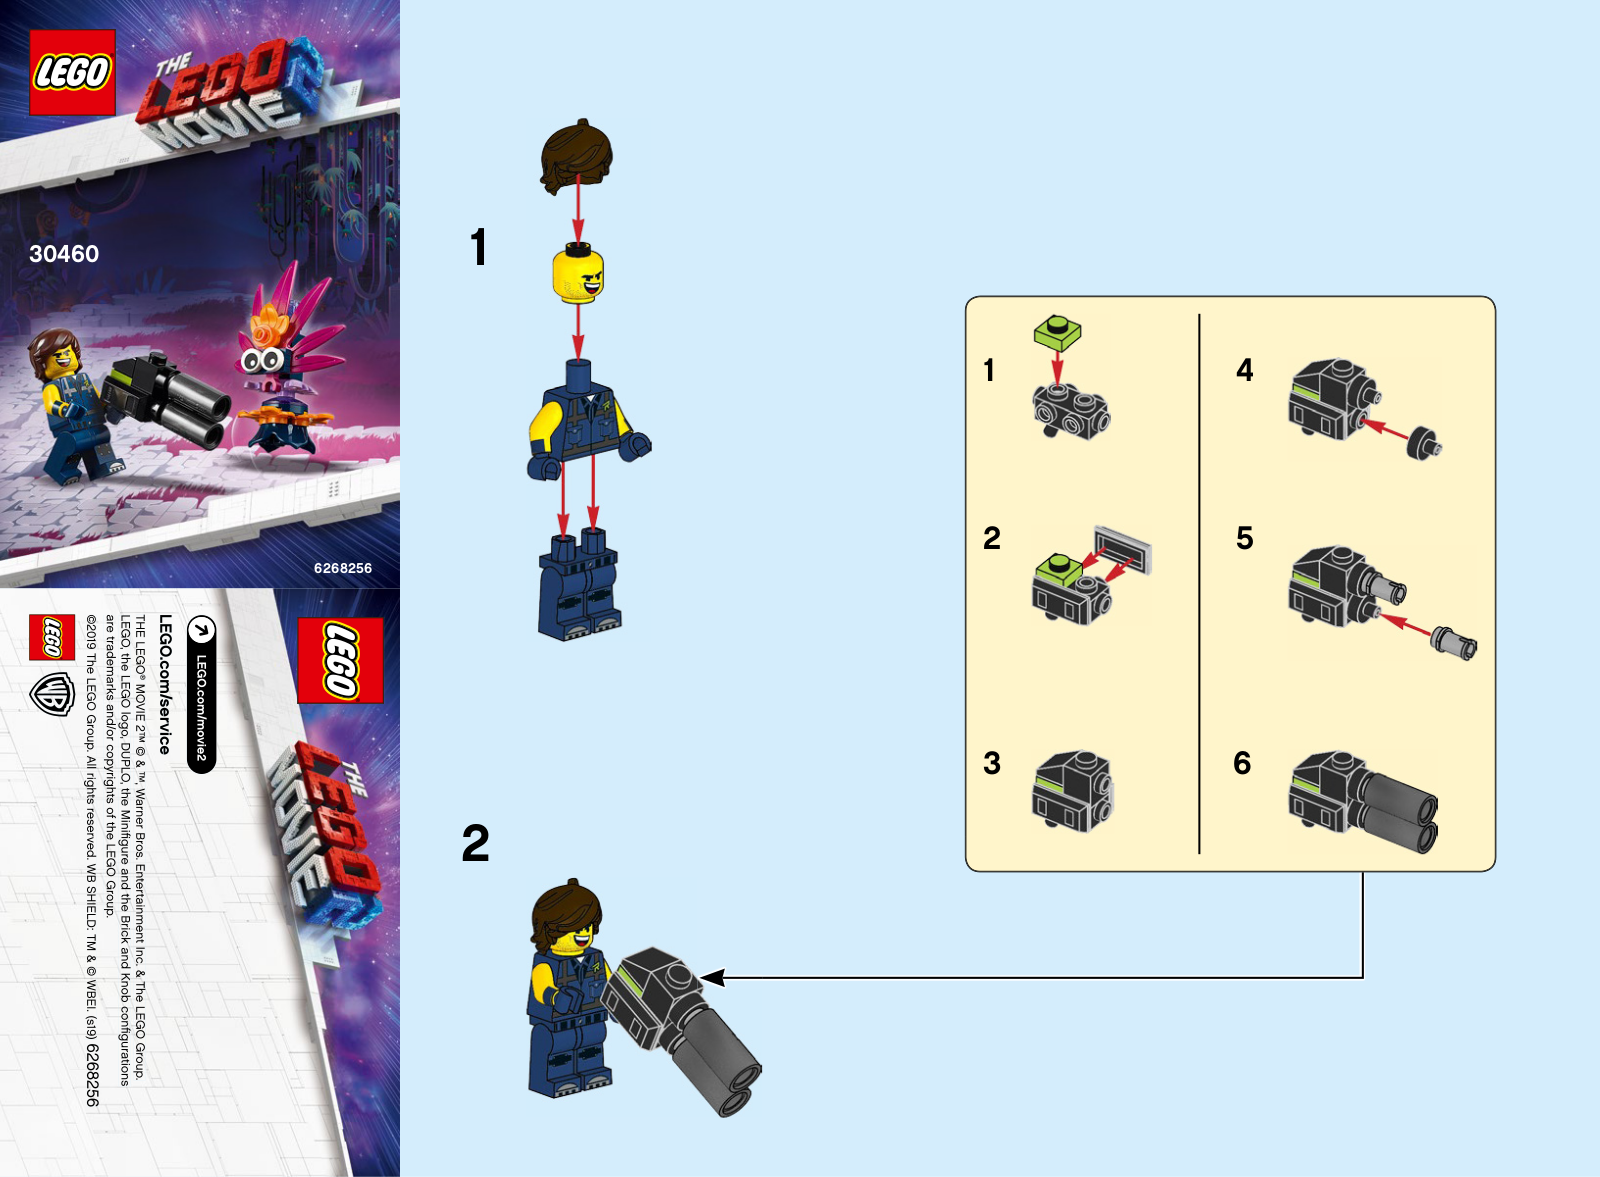 LEGO 30460 Instructions